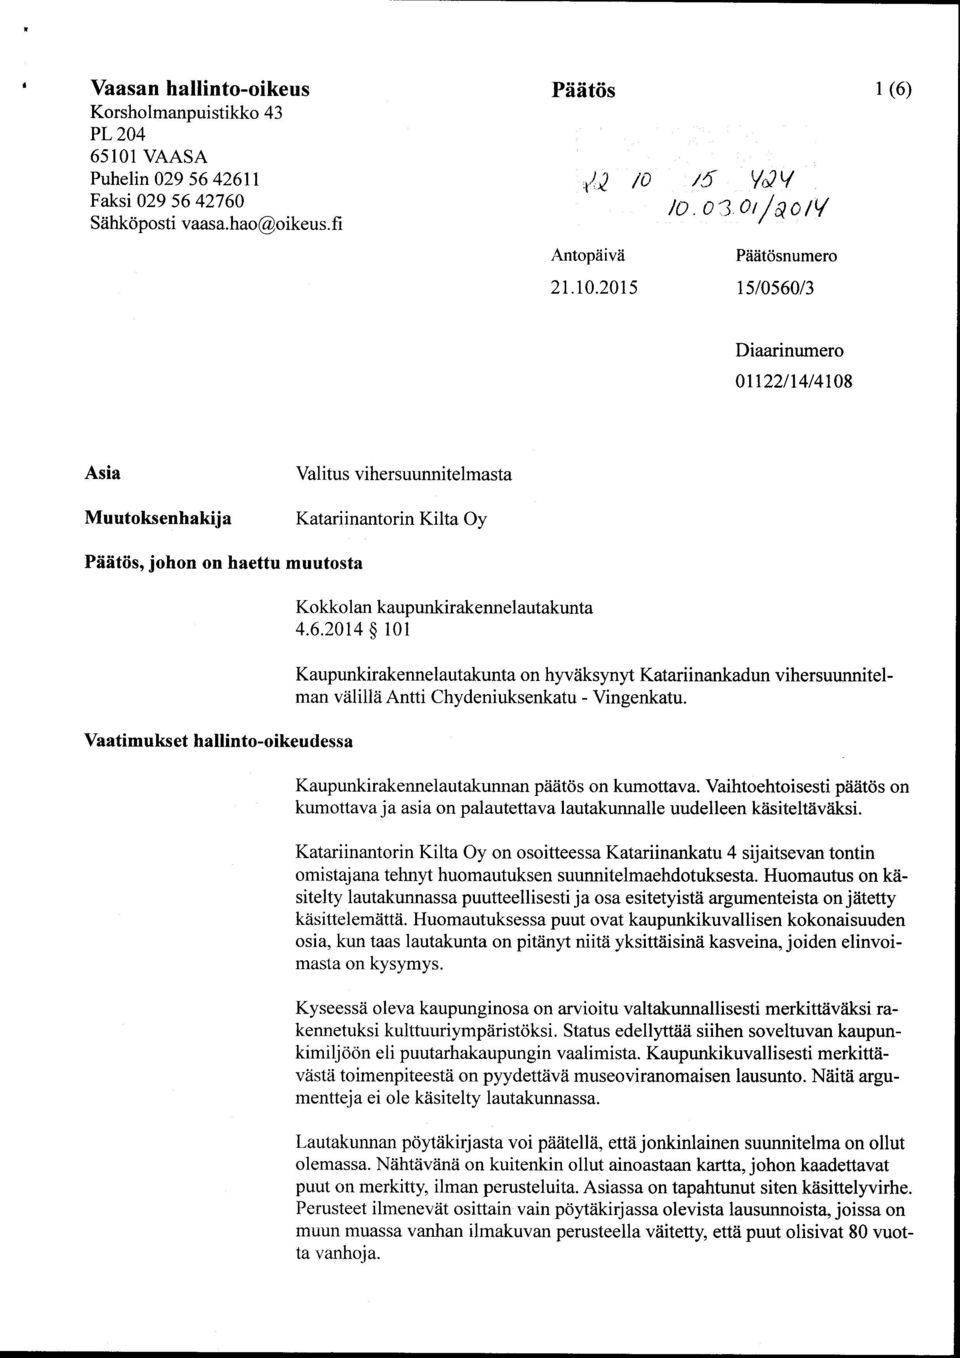 kaupunkirakennelautakunta 4.6.2014 101 Kaupunkirakennelautakunta on hyväksynyt Katariinankadun vihersuunnitelman välillä Antti Chydeniuksenkatu - Vingenkatu.